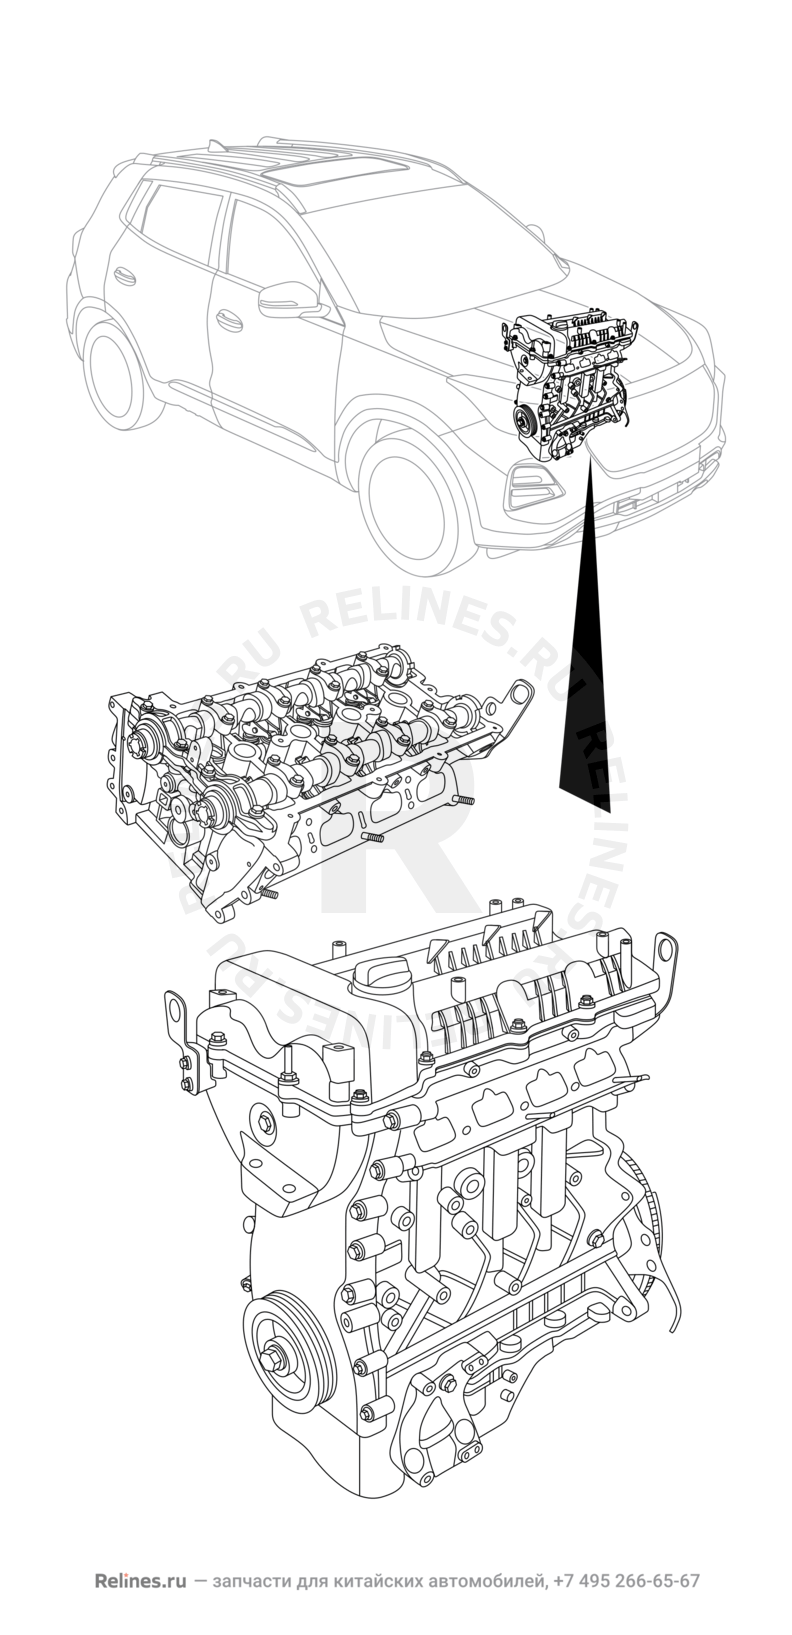 Запчасти Chery Tiggo 4 Поколение I (2017)  — Двигатель в сборе — схема